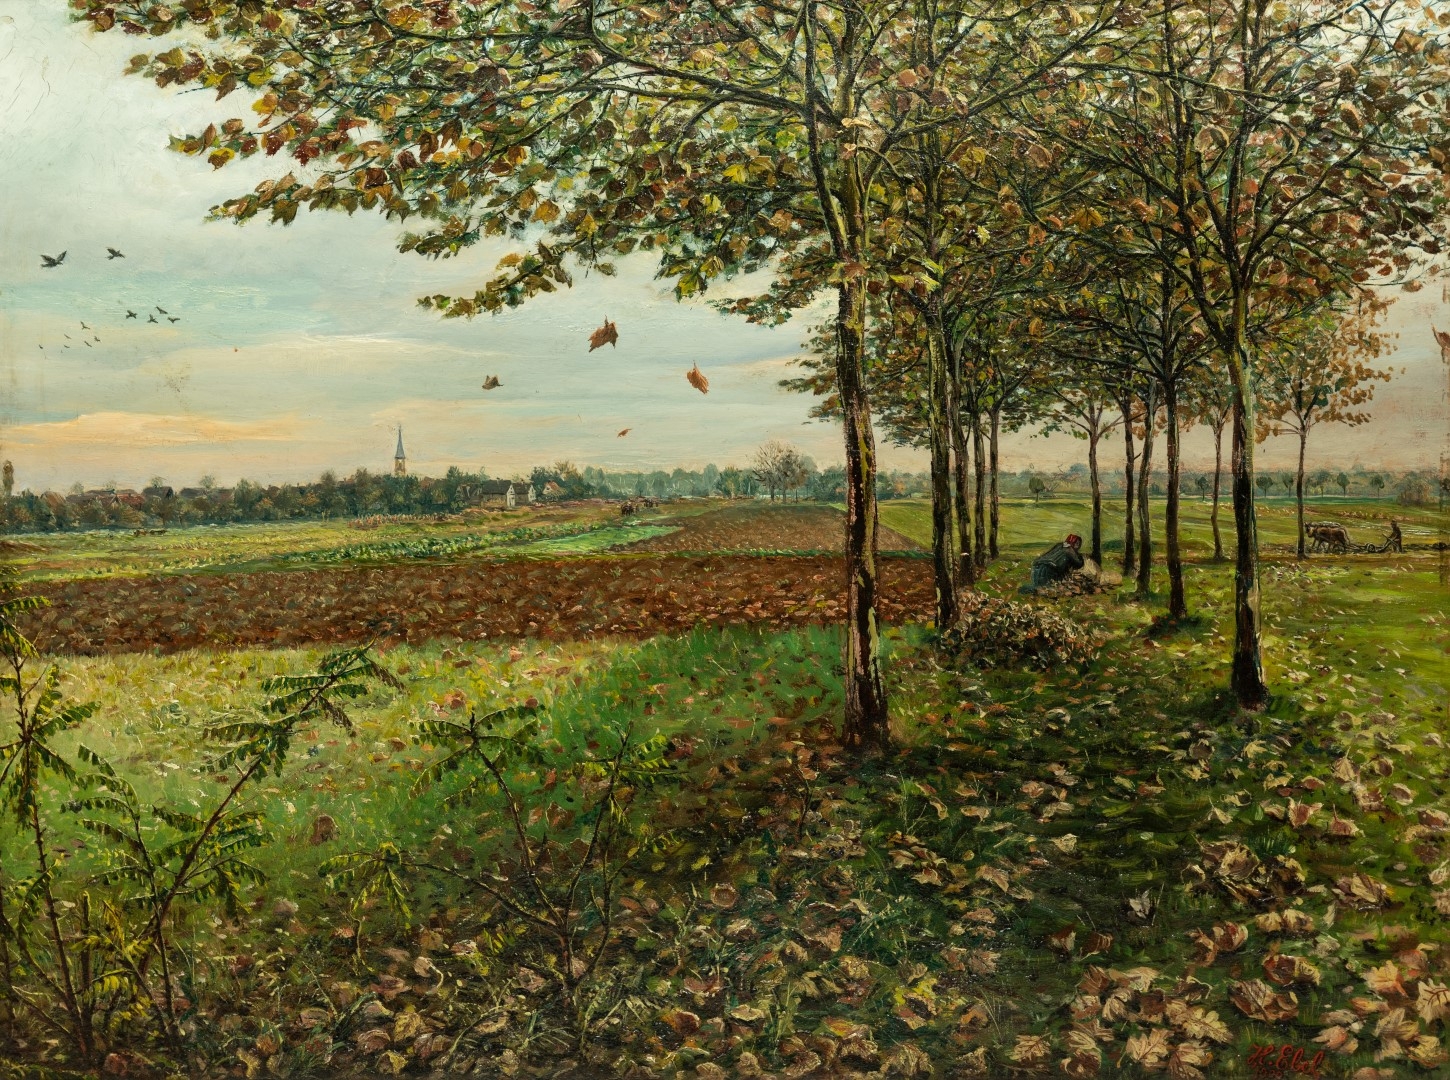 Vue sur village d' Ohnheim, 1900, huile sur toile, 52x70 cm, collection particulière.